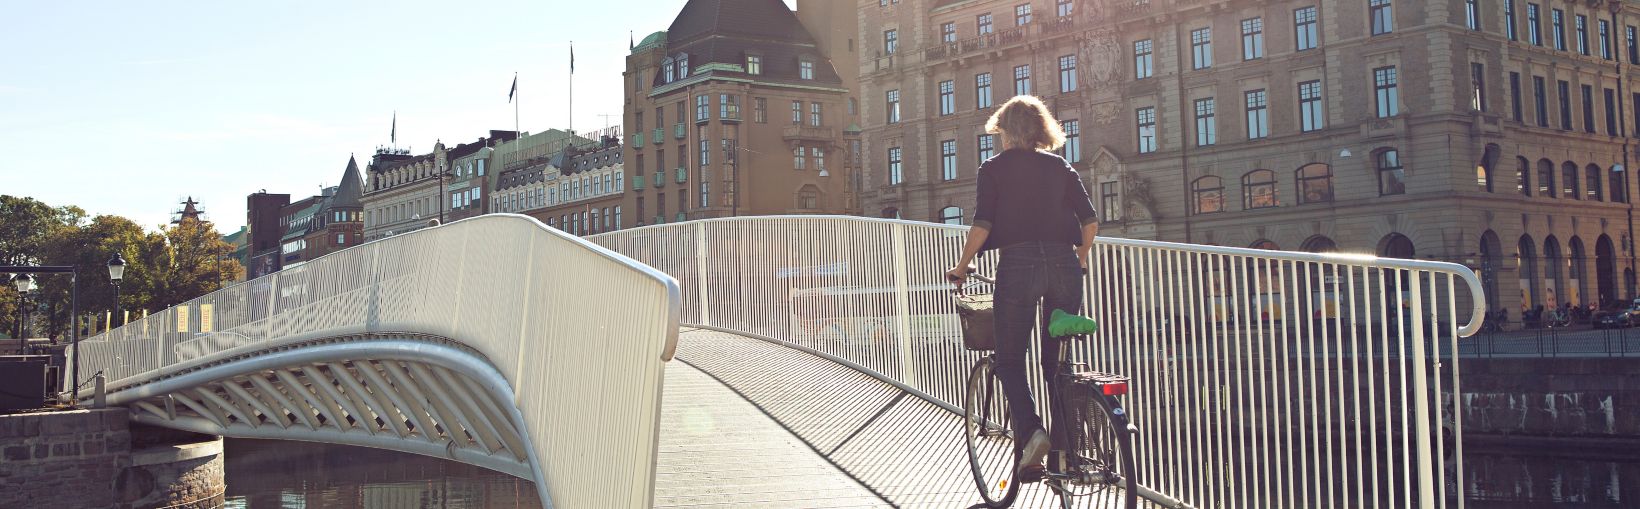 Per tiltą dviračiu važiuojanti moteris 